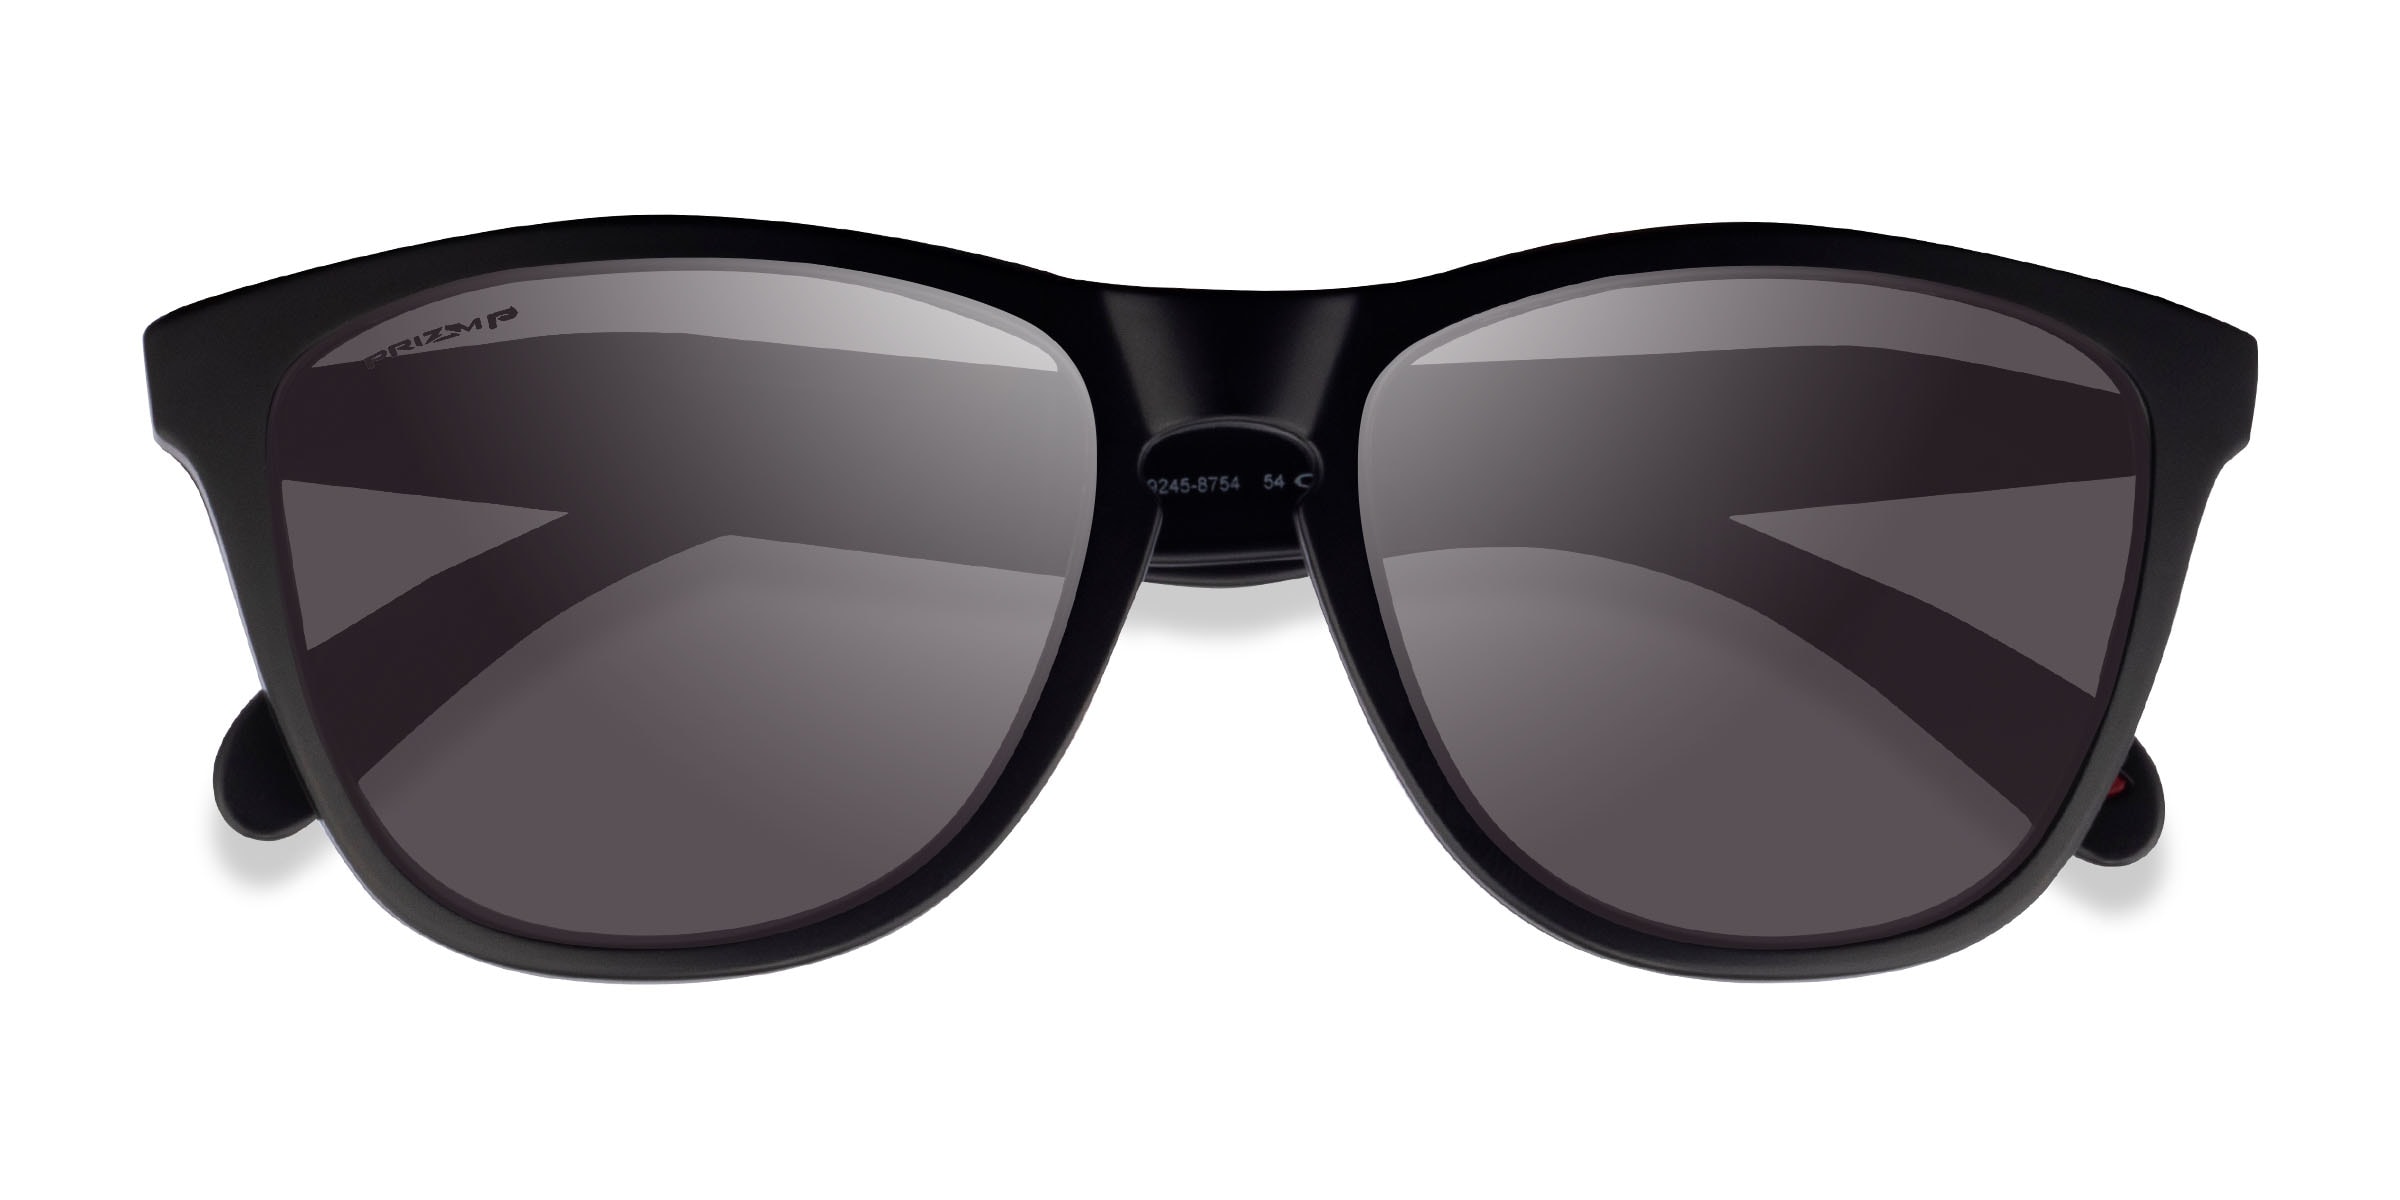 Oakley OO9245 Frogskins TM - Square Matte Black Frame Sunglasses